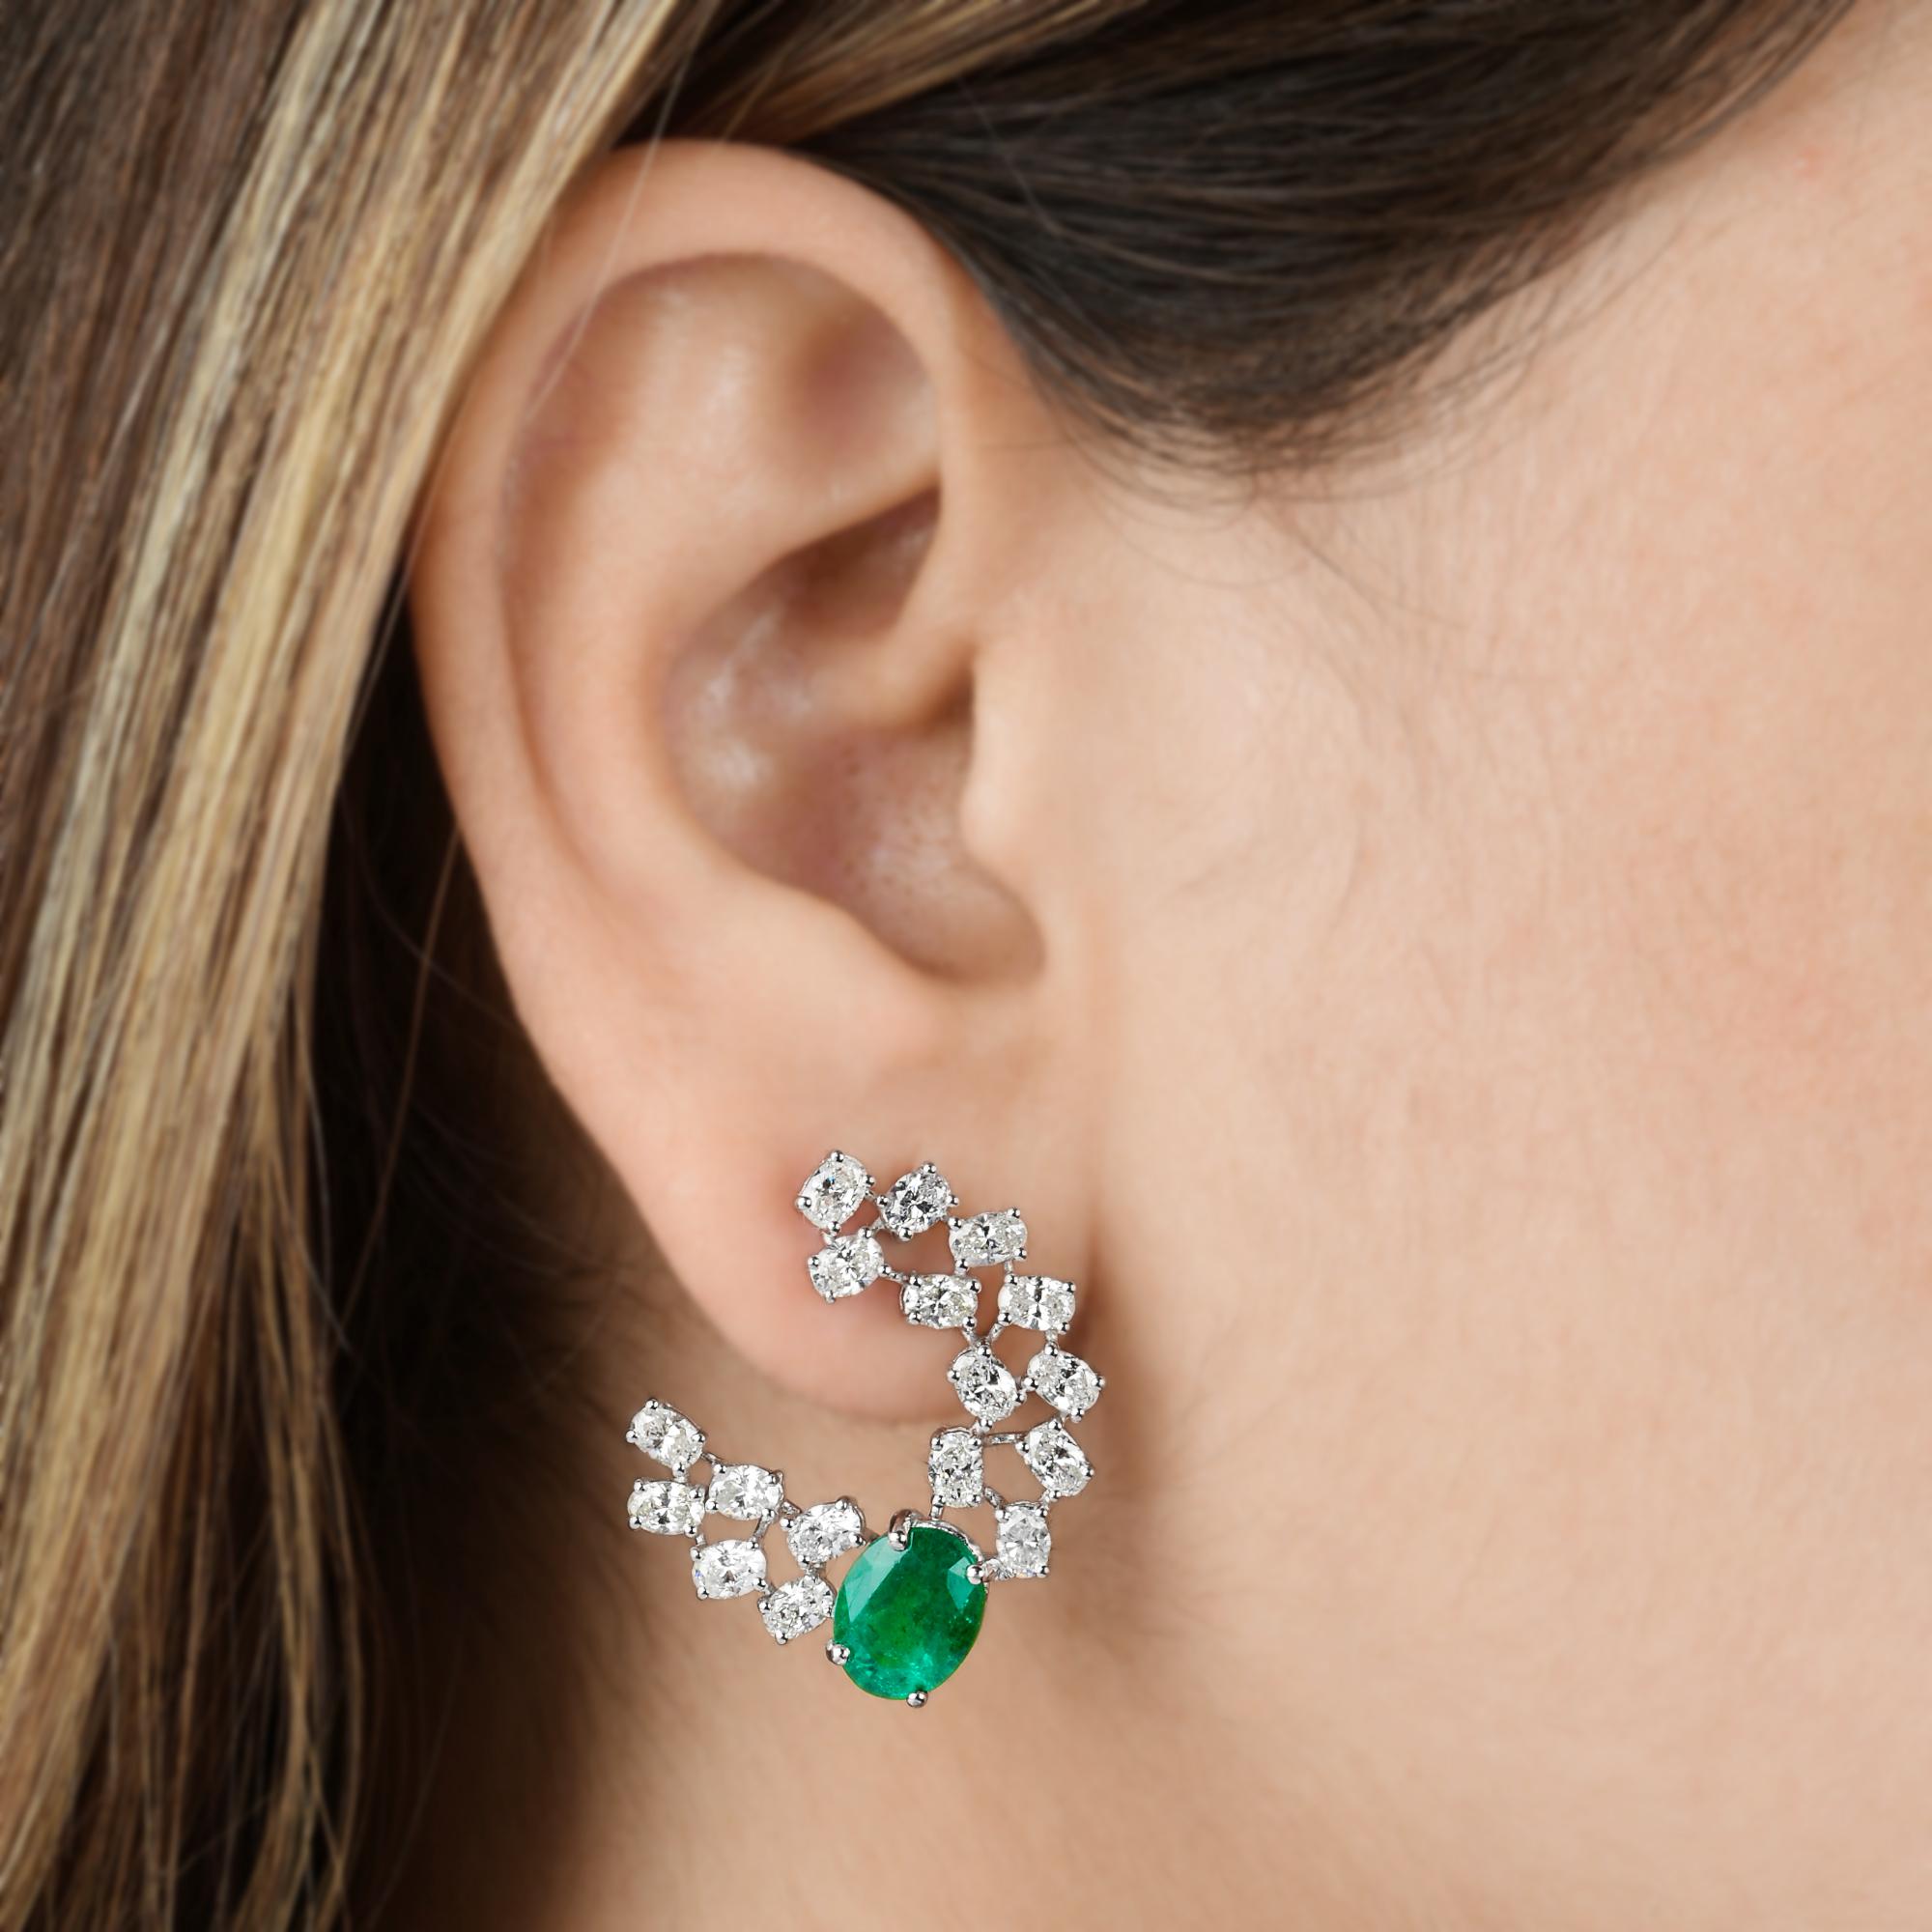 Oval Cut Zambian Oval Emerald Gemstone Stud Earrings Diamond Solid 14k White Gold Jewelry For Sale